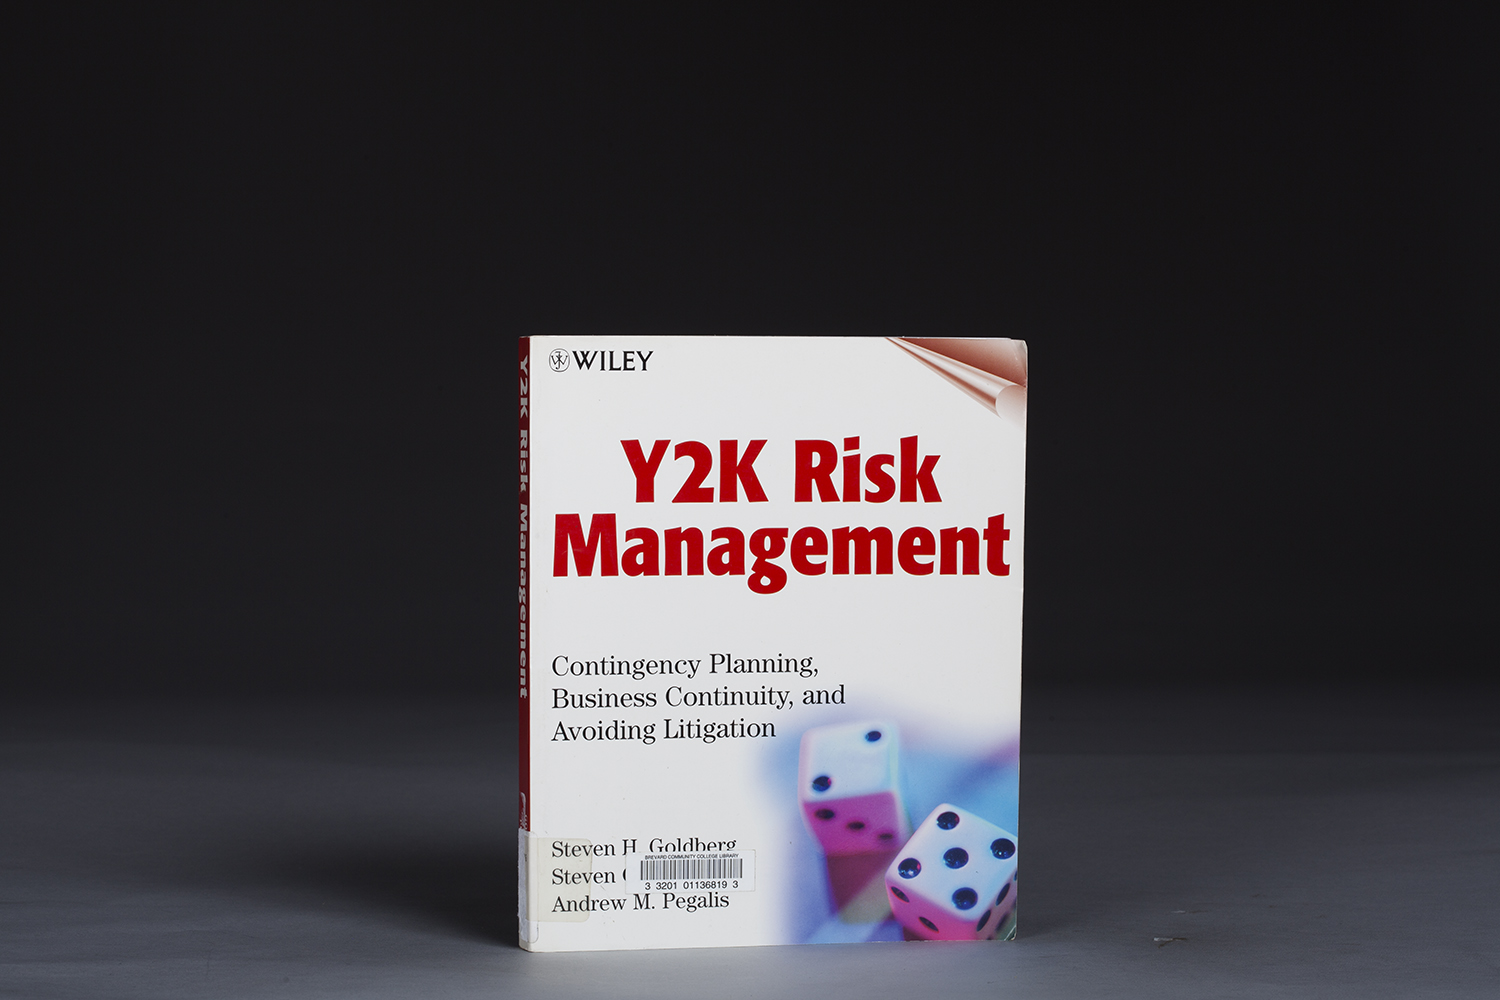 Y2K Risk Management - Contingency Planning - 1005 Cover.jpg